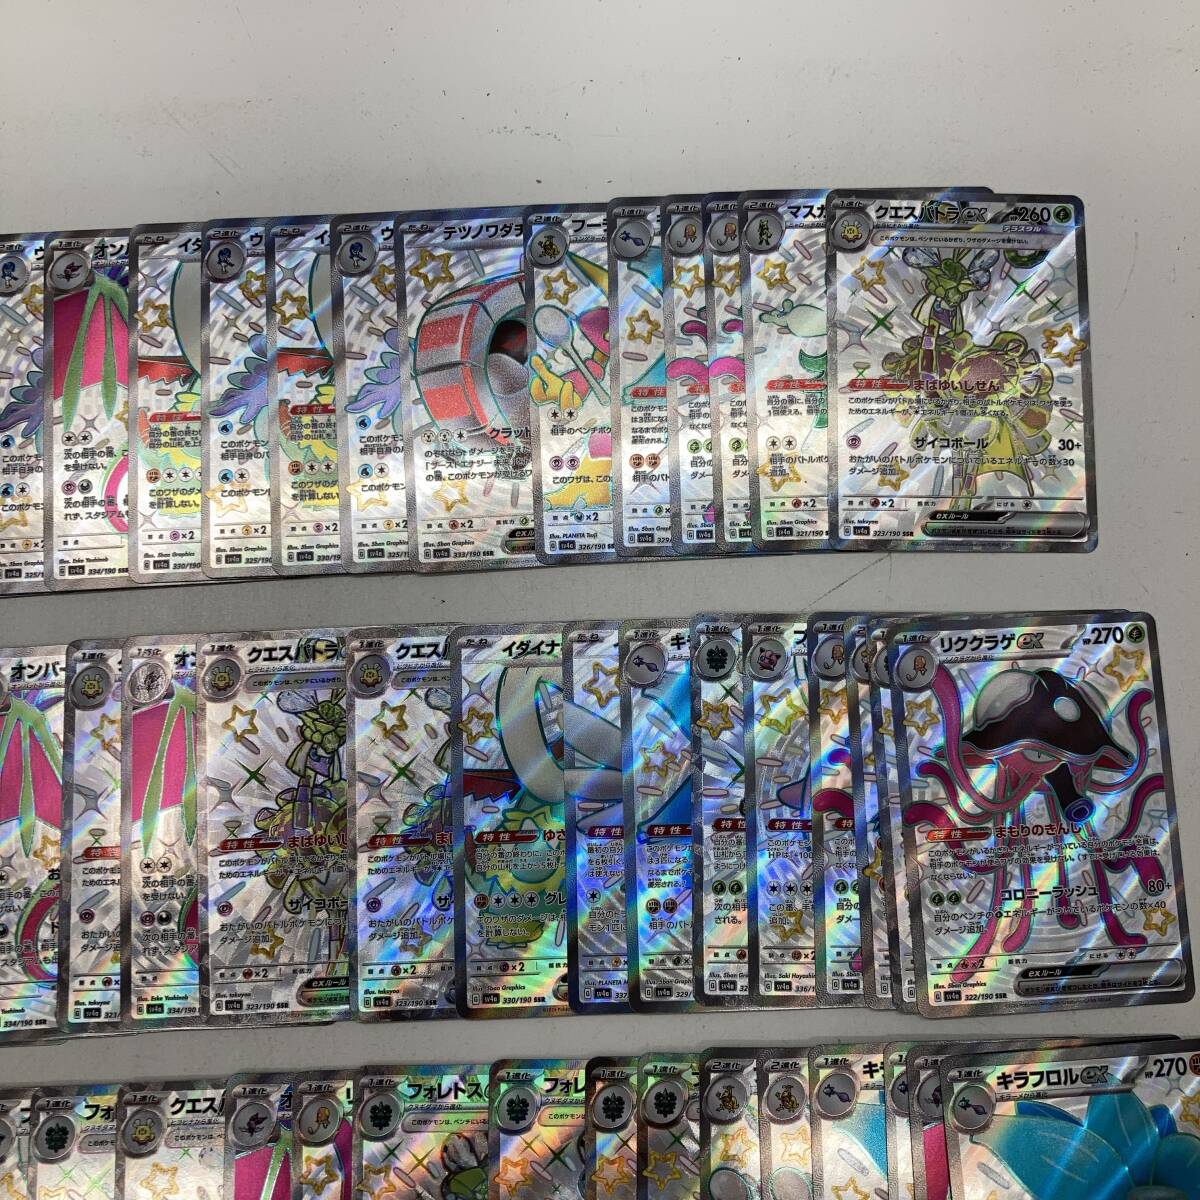 [1 иен ~] Pokemon карта SSR 150 шт. комплект pokeka коллекционные карточки kespa тигр exlik медуза expk Lynn exf- DIN ex др. [ б/у товар ]